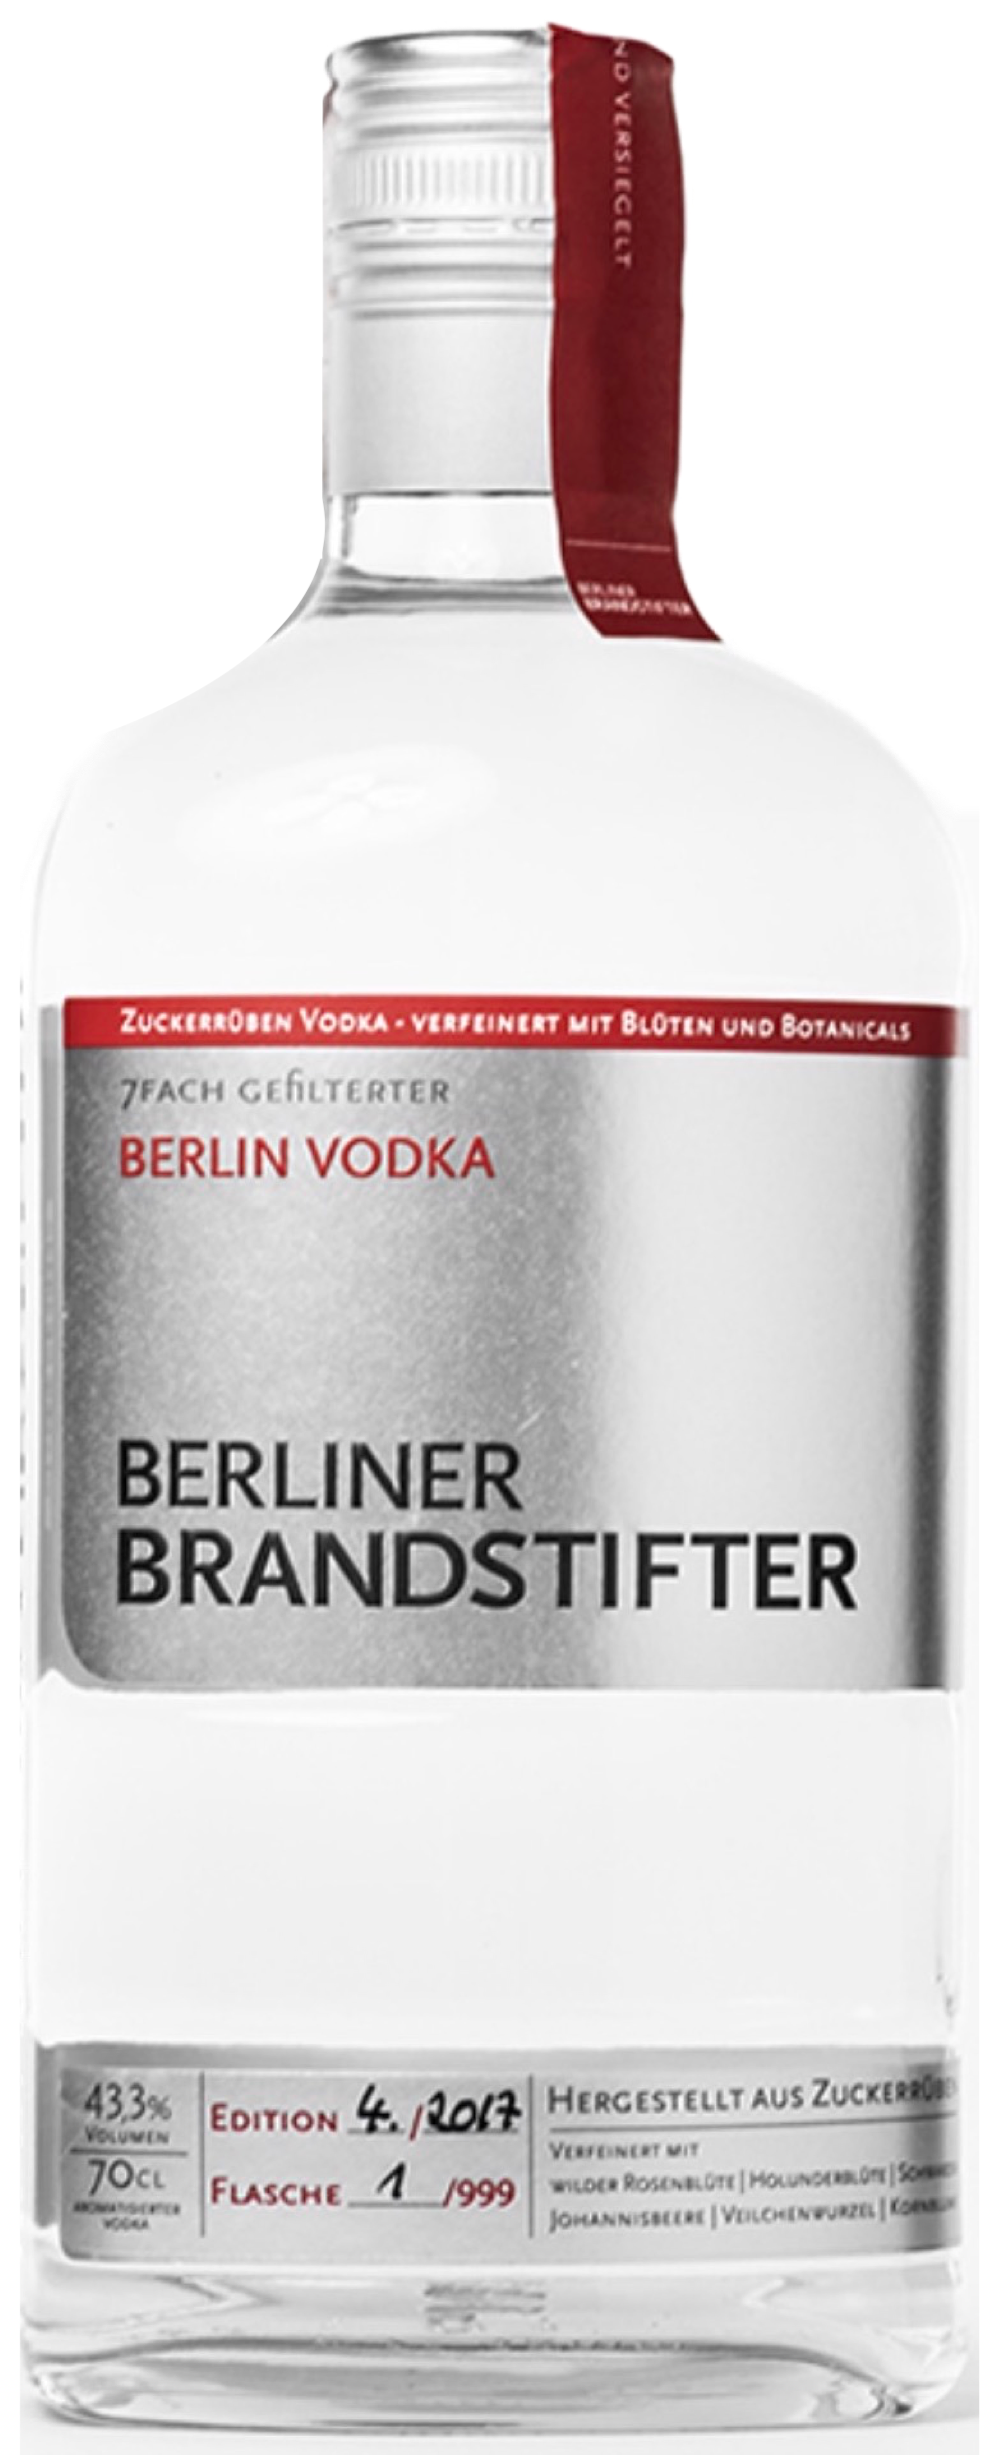 Berliner Brandstifter Berlin Vodka 43,3% vol. 0,7L